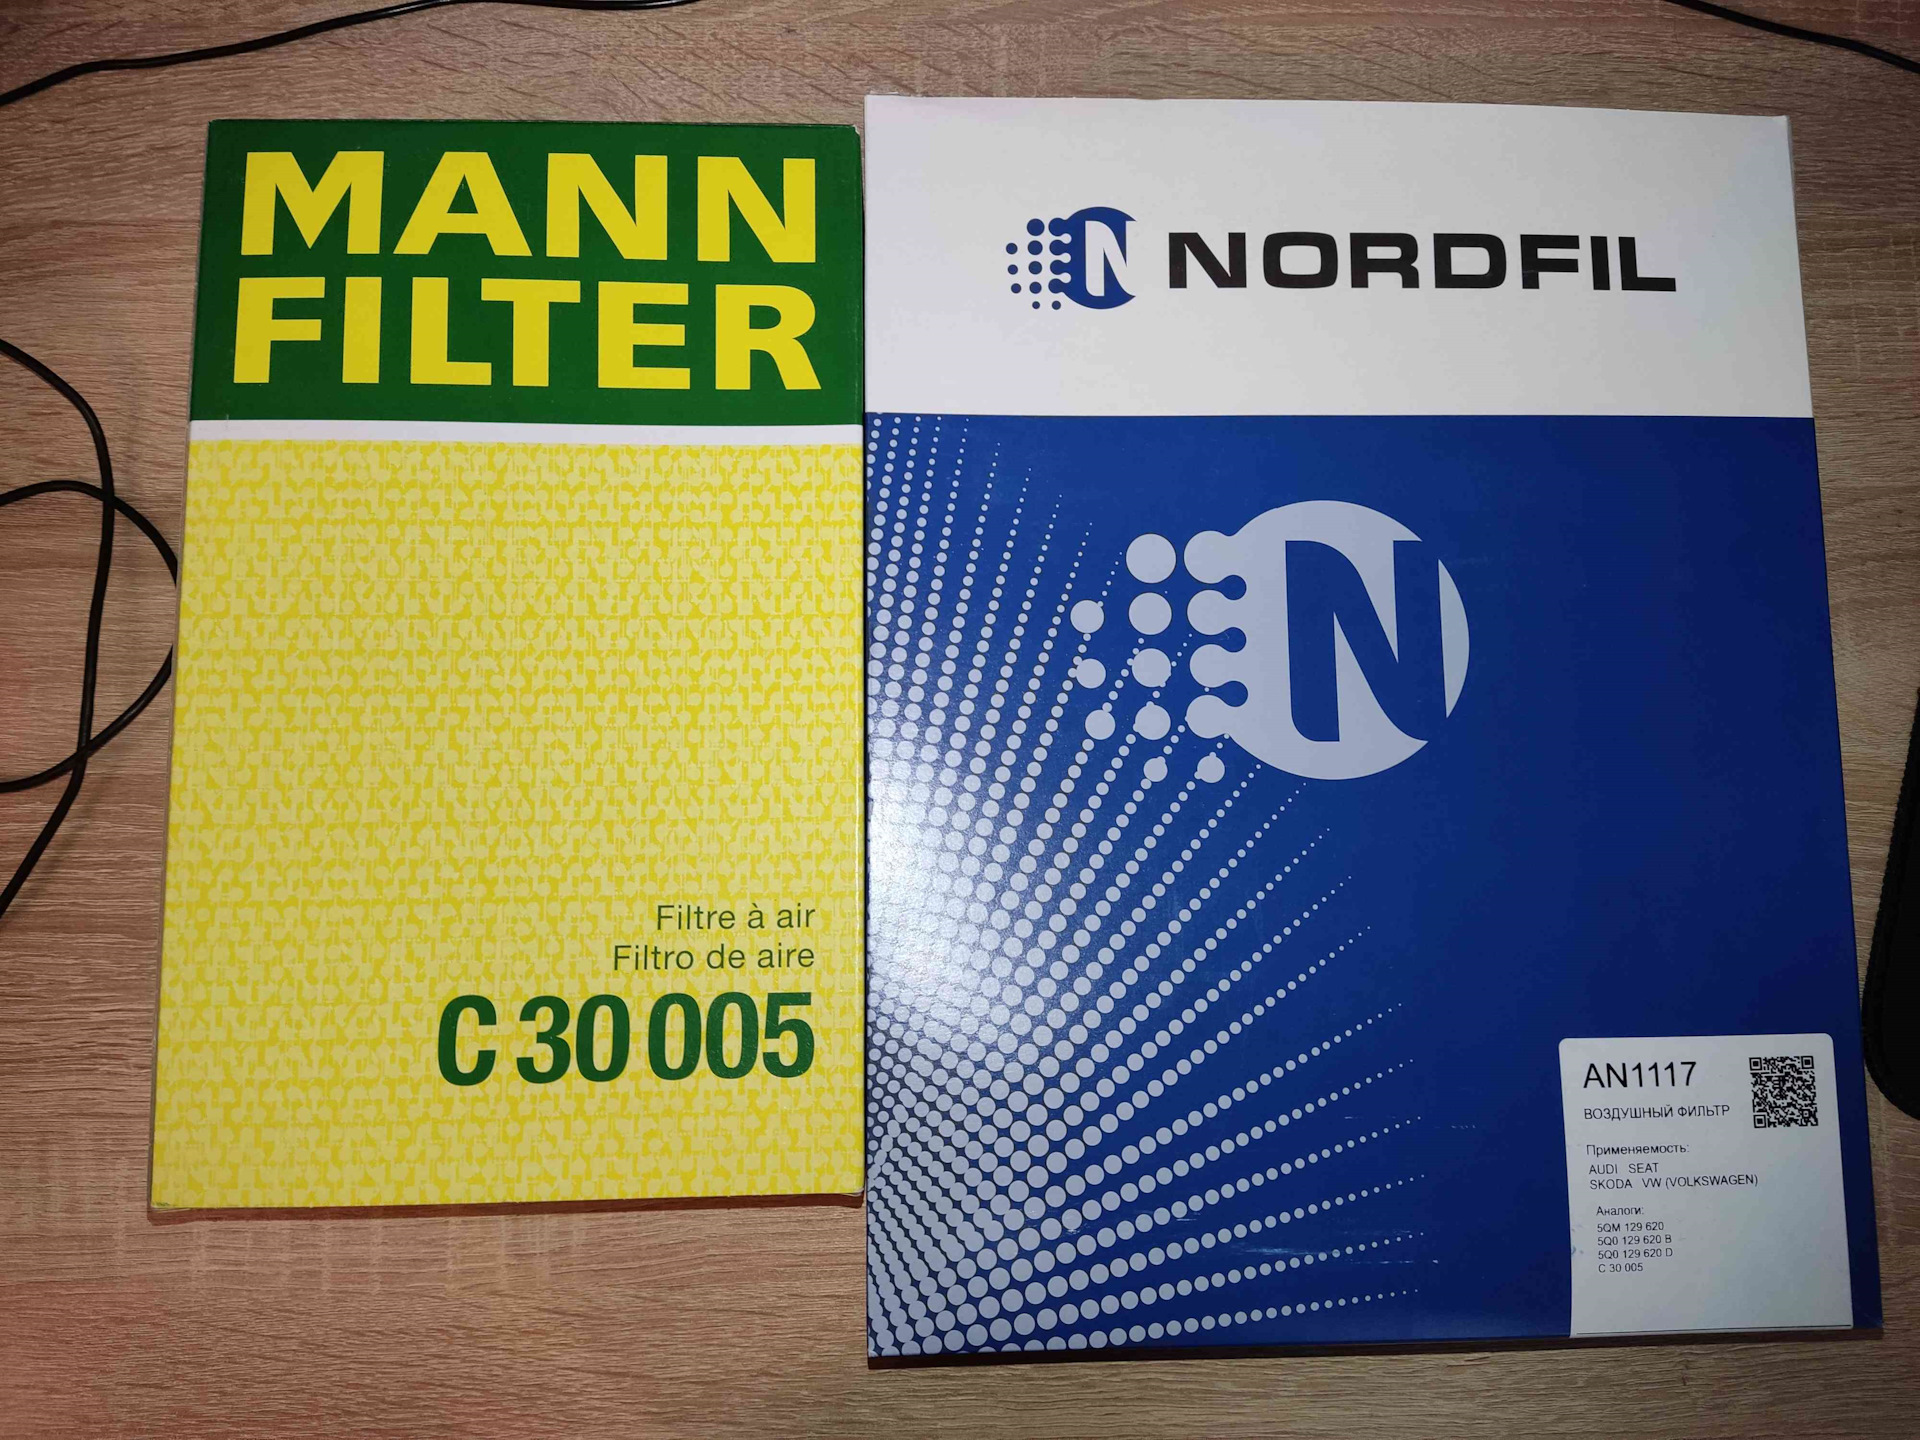 Воздушный фильтр nordfil. Воздушные фильтры NORDFIL. An1117 фильтр. An1117 NORDFIL. Фильтра фирмы нордфил.